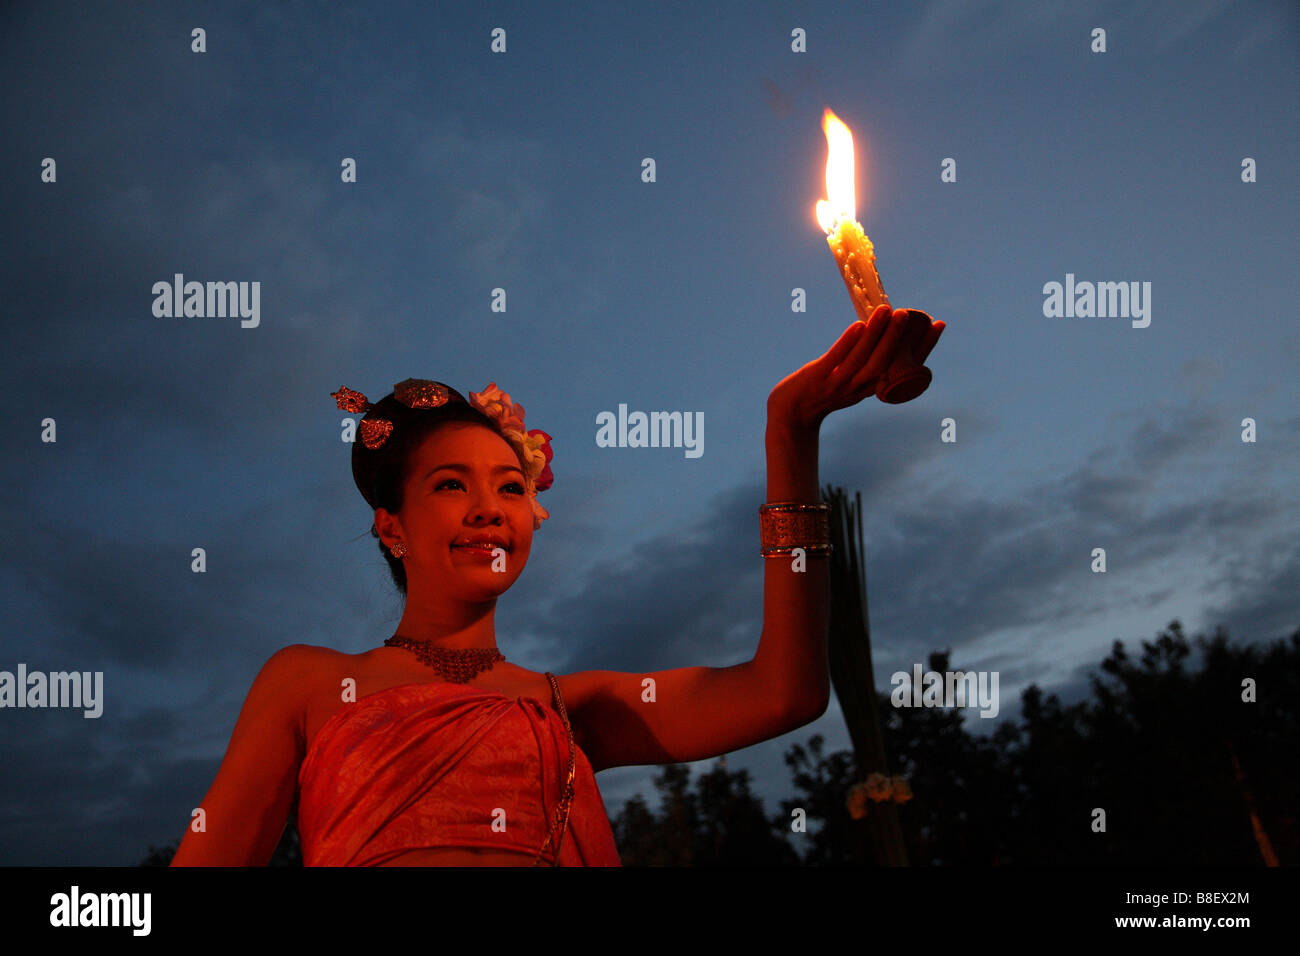 La Thaïlande, thai girl avec un chalumeau Banque D'Images